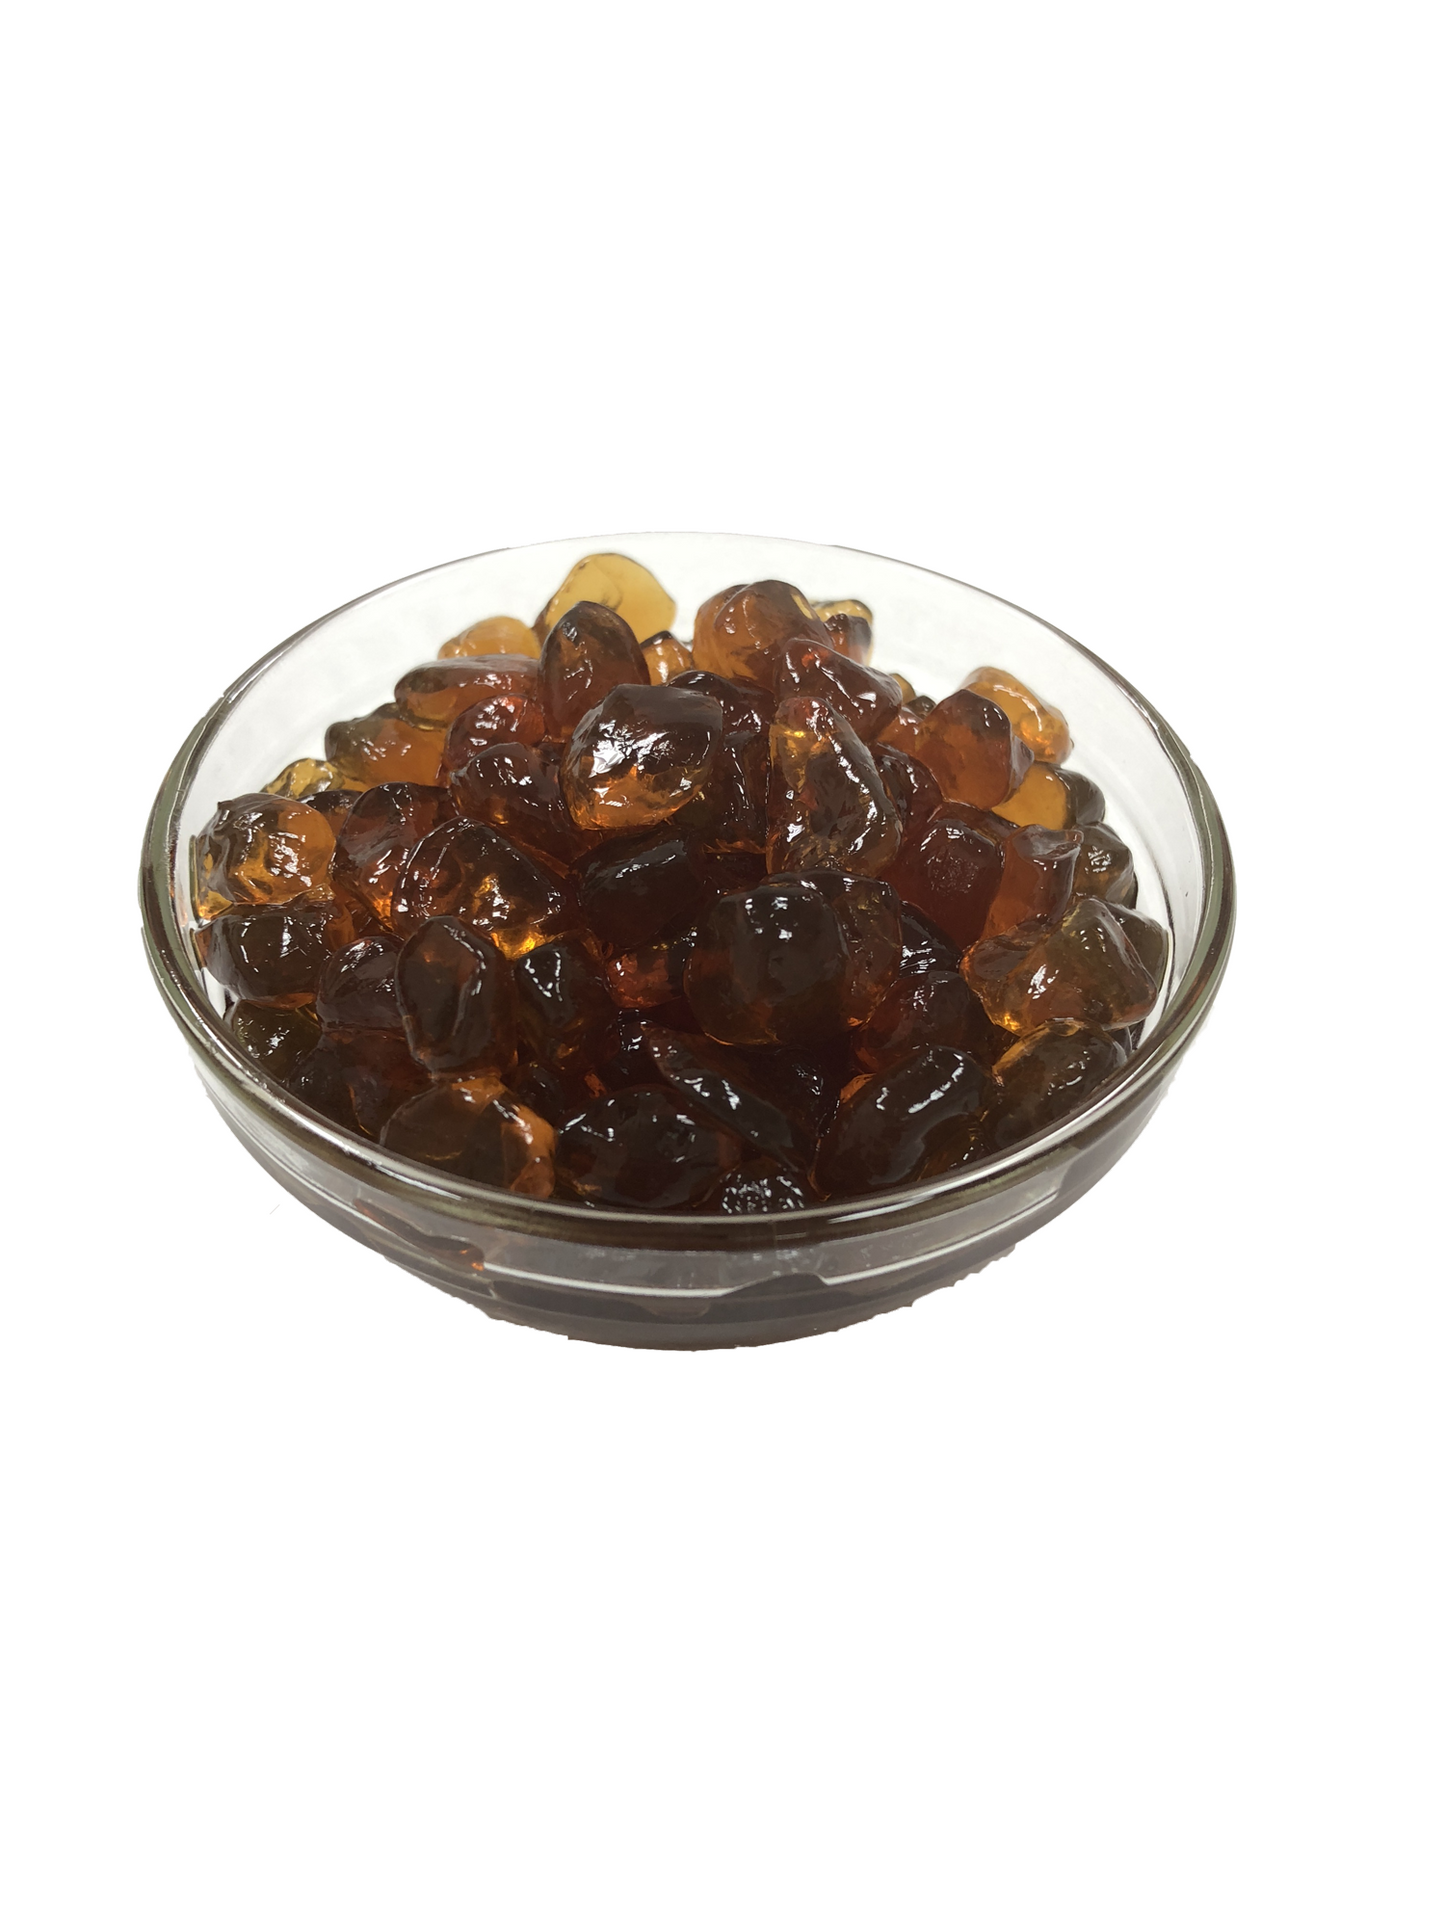 Brown Sugar Agar Pearls & Syrup Combo - SAVE 5%